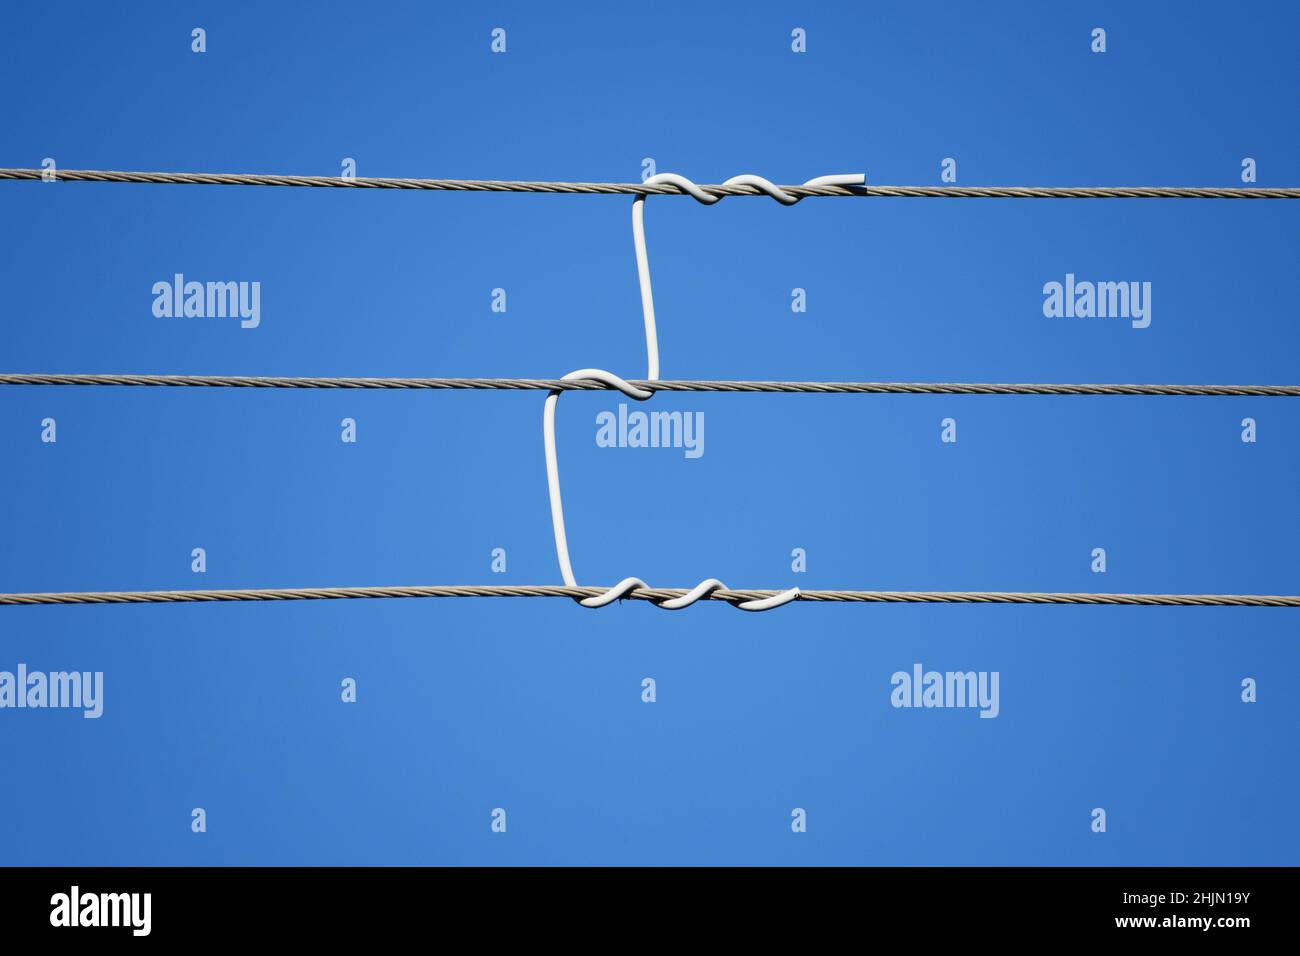 Freileitung mit benutzerdefiniertem Kabelabstandhalter. Nahaufnahme. Blauer Himmel Hintergrund Stockfoto